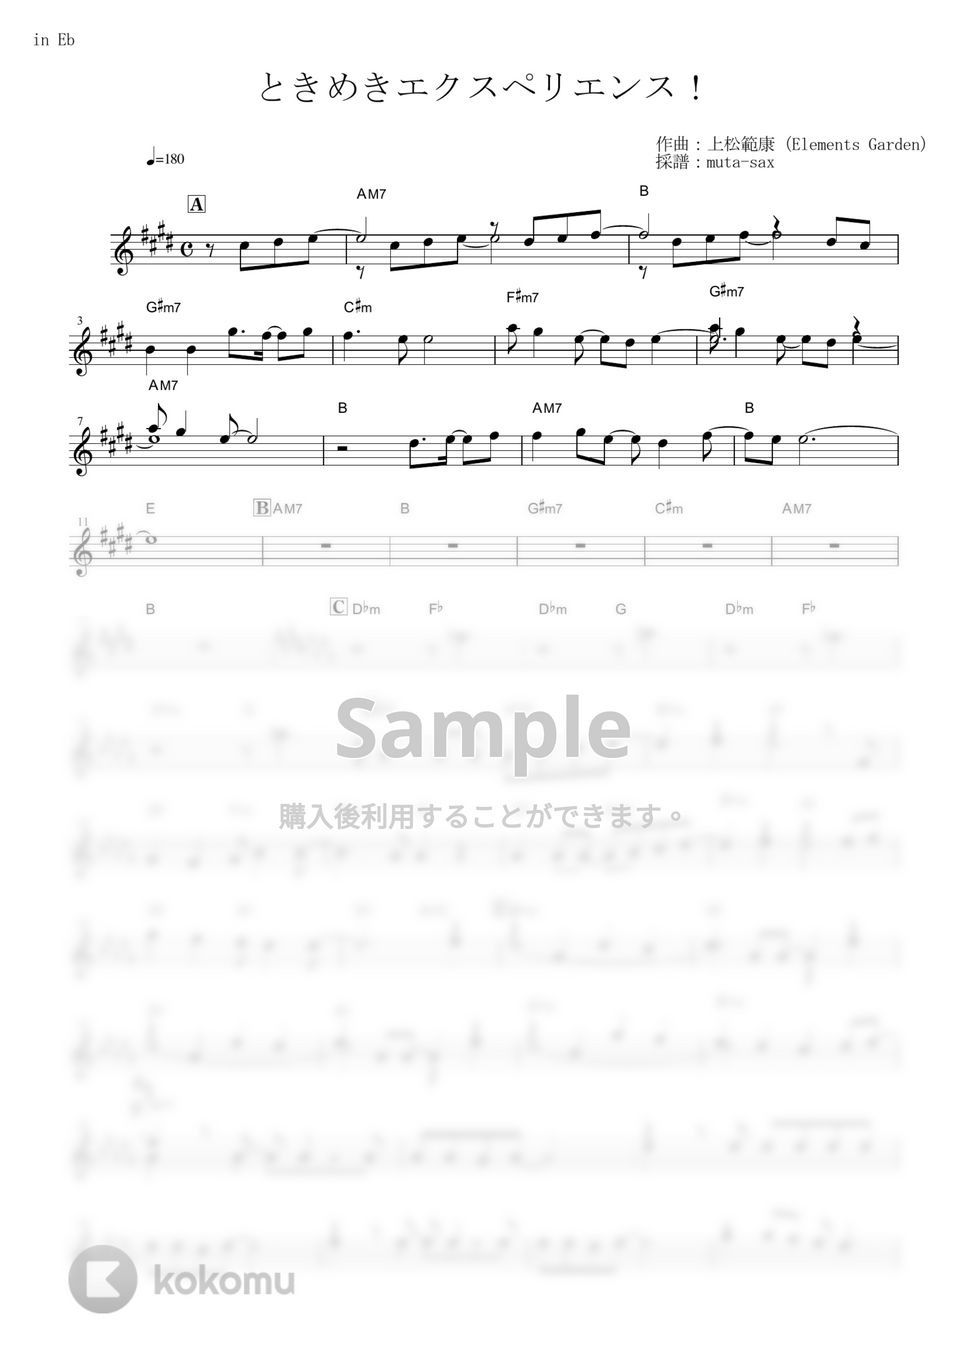 BanG Dream! - ときめきエクスペリエンス!【in Eb】 by muta-sax